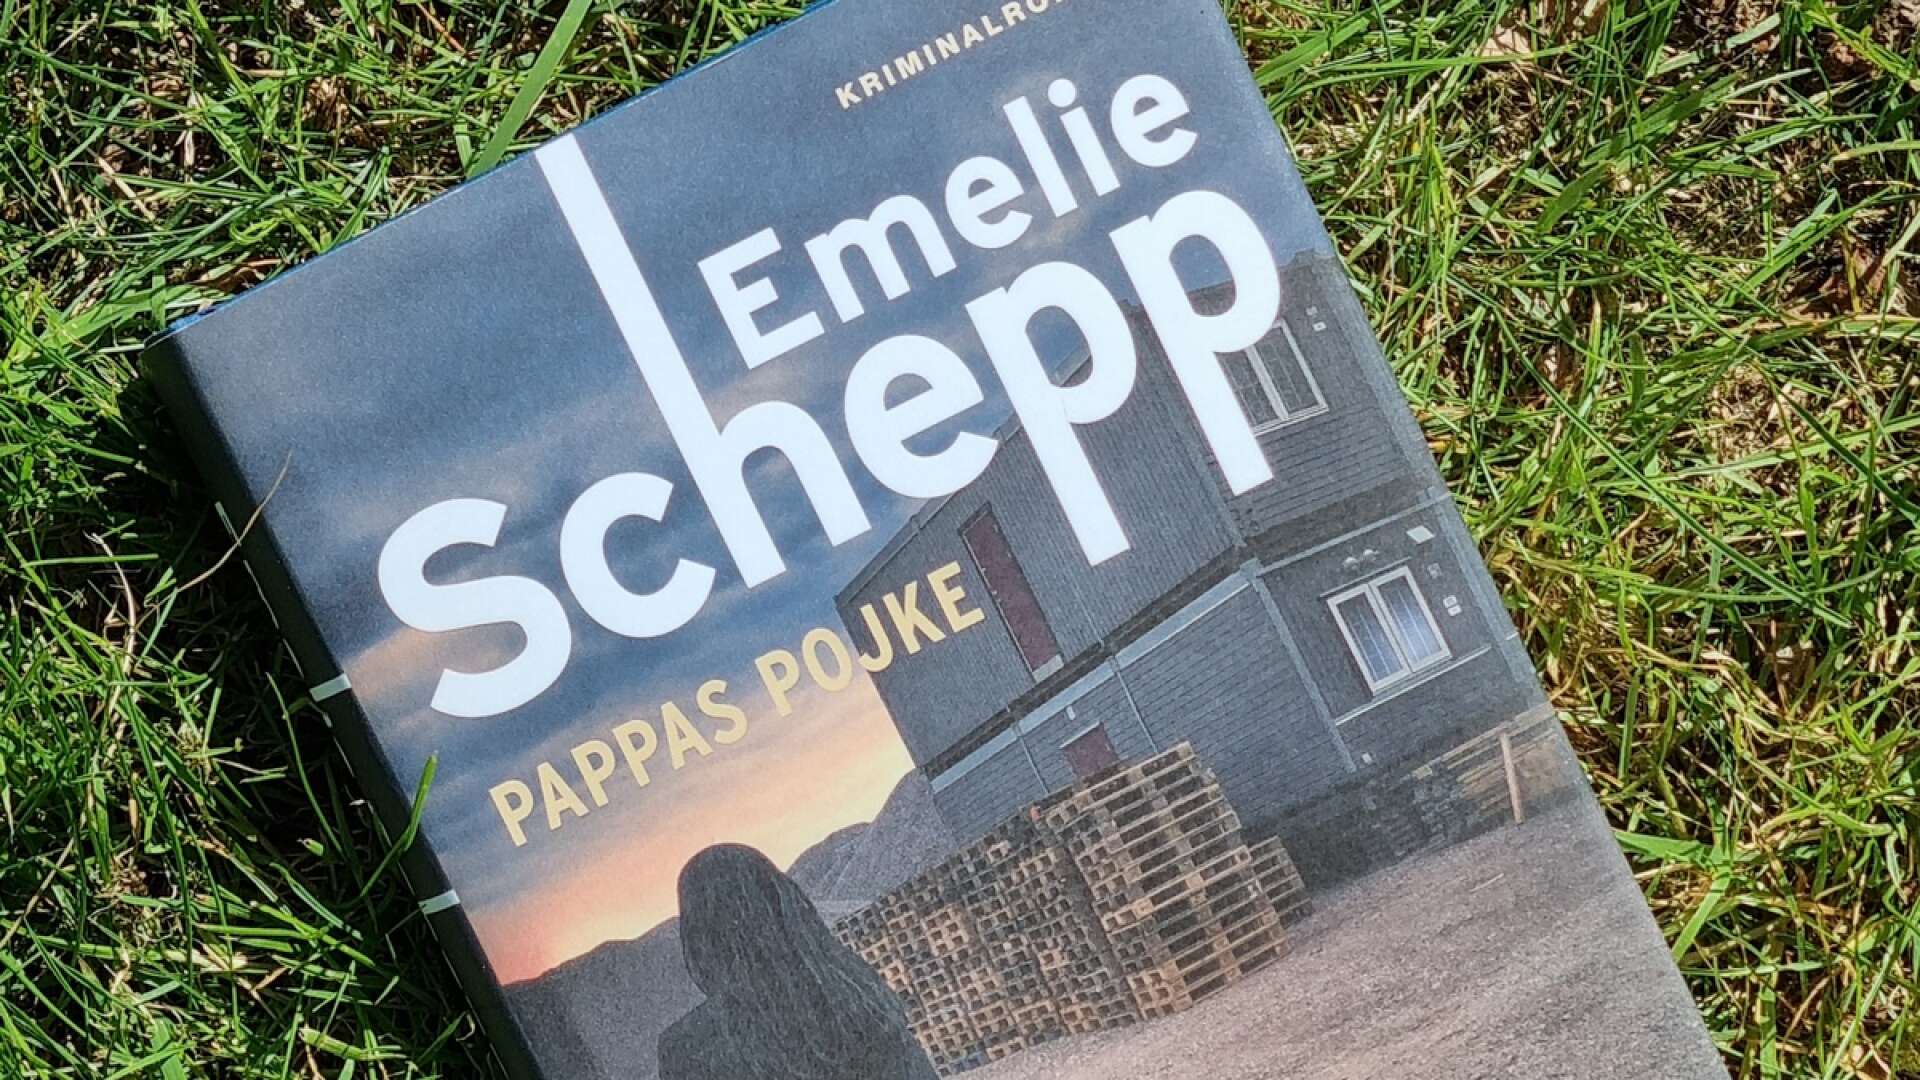 Emelie Schepps &quot;Pappas pojke&quot;, en spännande kriminalroman att läsa i sommar.